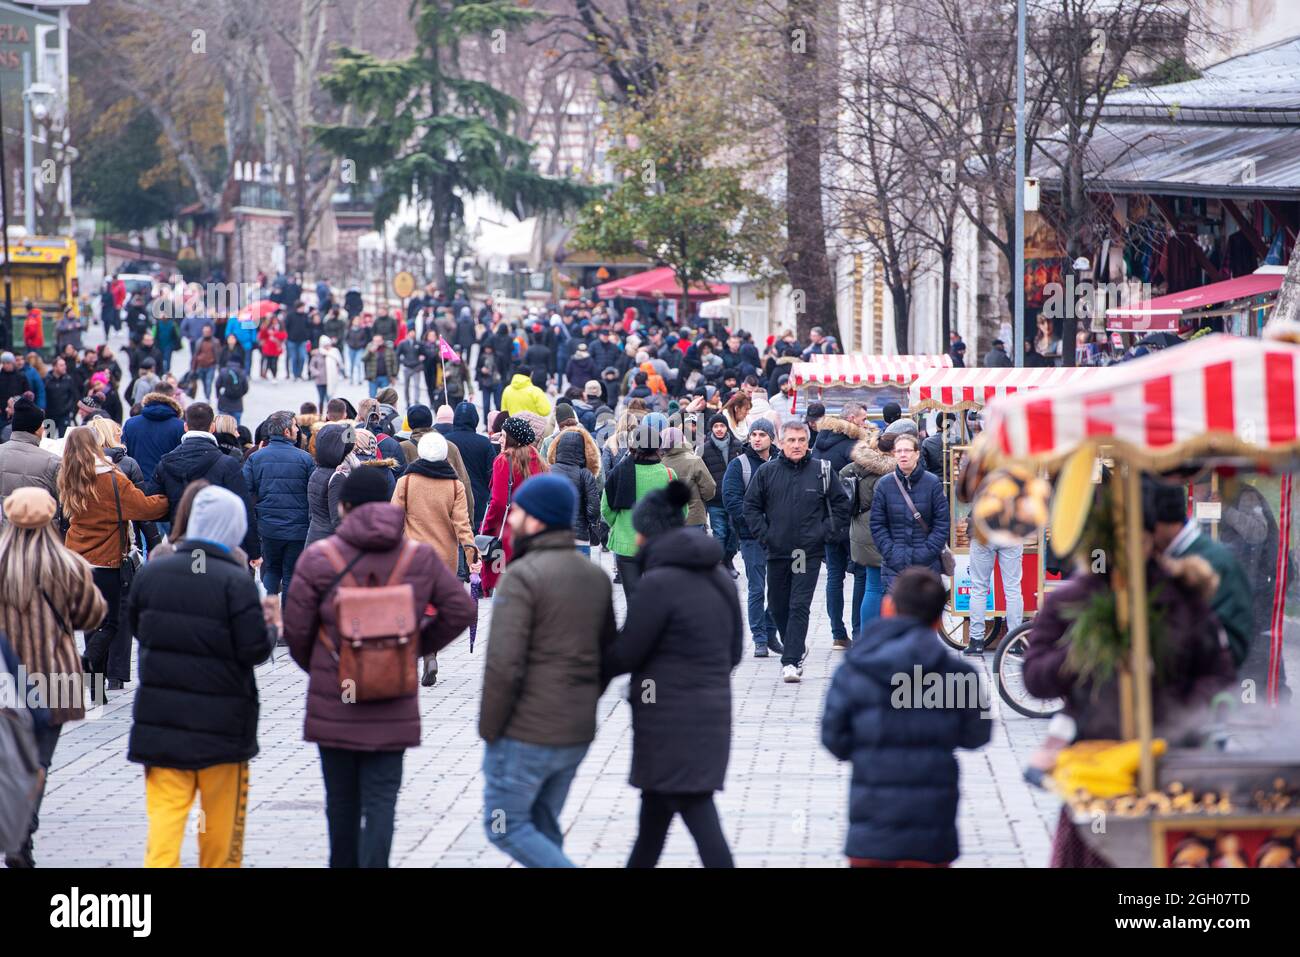 ISTANBUL - DEC 31: Folla di persone che camminano nel giorno d'inverno nella città vecchia di Istanbul. Piazza Sultanahmet con turisti, dicembre 31. 2020 in Turchia Foto Stock